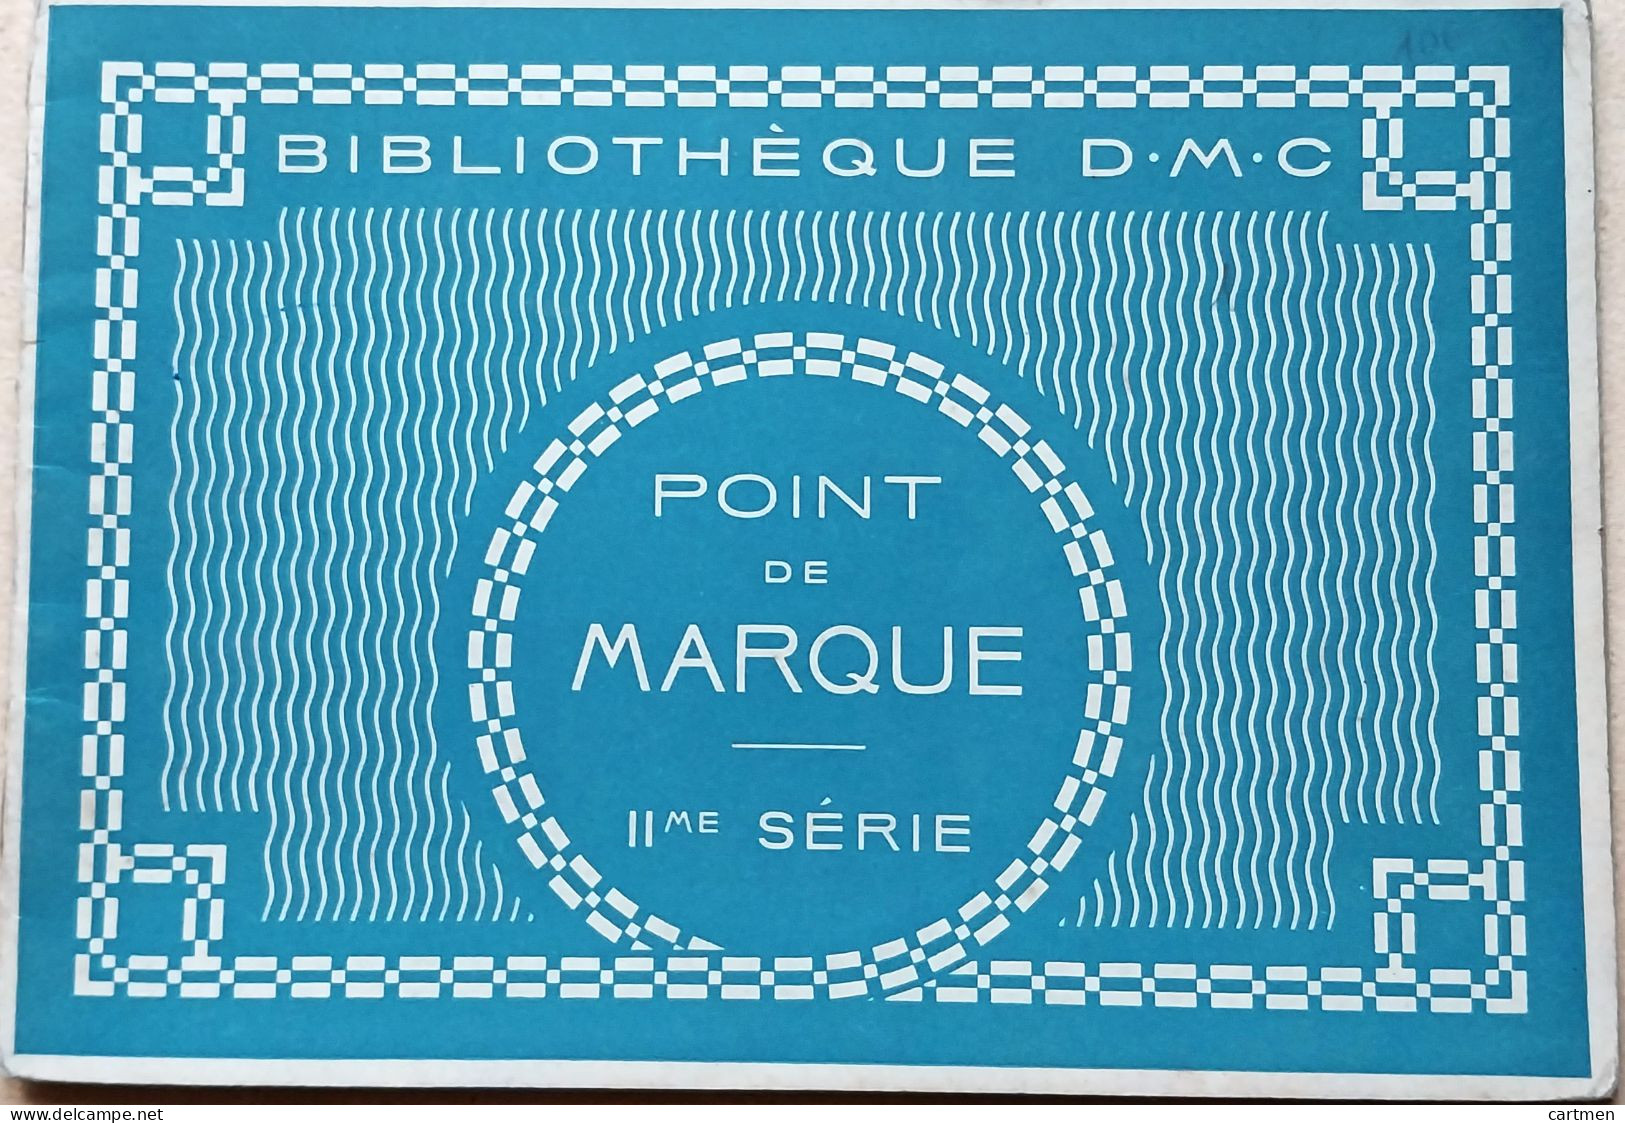 BRODERIE DENTELLE POINT DE CROIX  BIBLIOTHEQUE DMC DILLMONT POINT DE MARQUE  II° SERIE ALBUM ETAT NEUF - Point De Croix